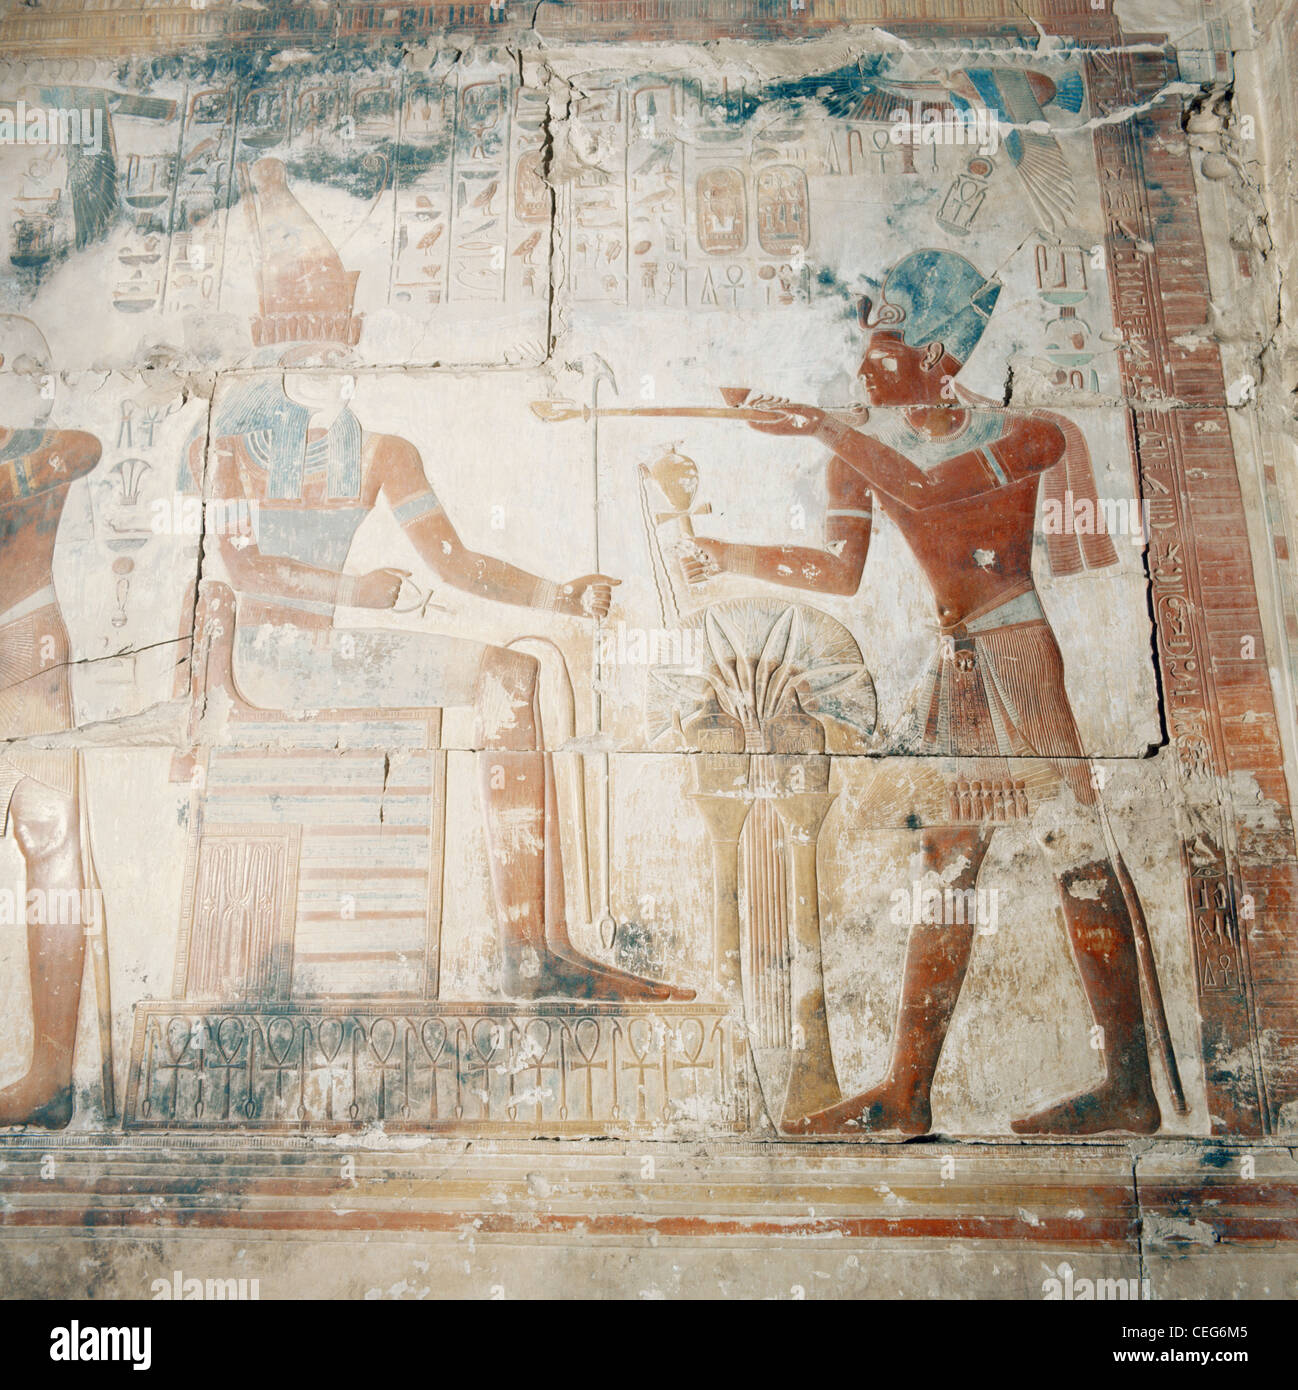 Egitto Abydos tomba pittura murale Osiride Tempio Funery tempio di Seti I, Valle del Nilo Foto Stock